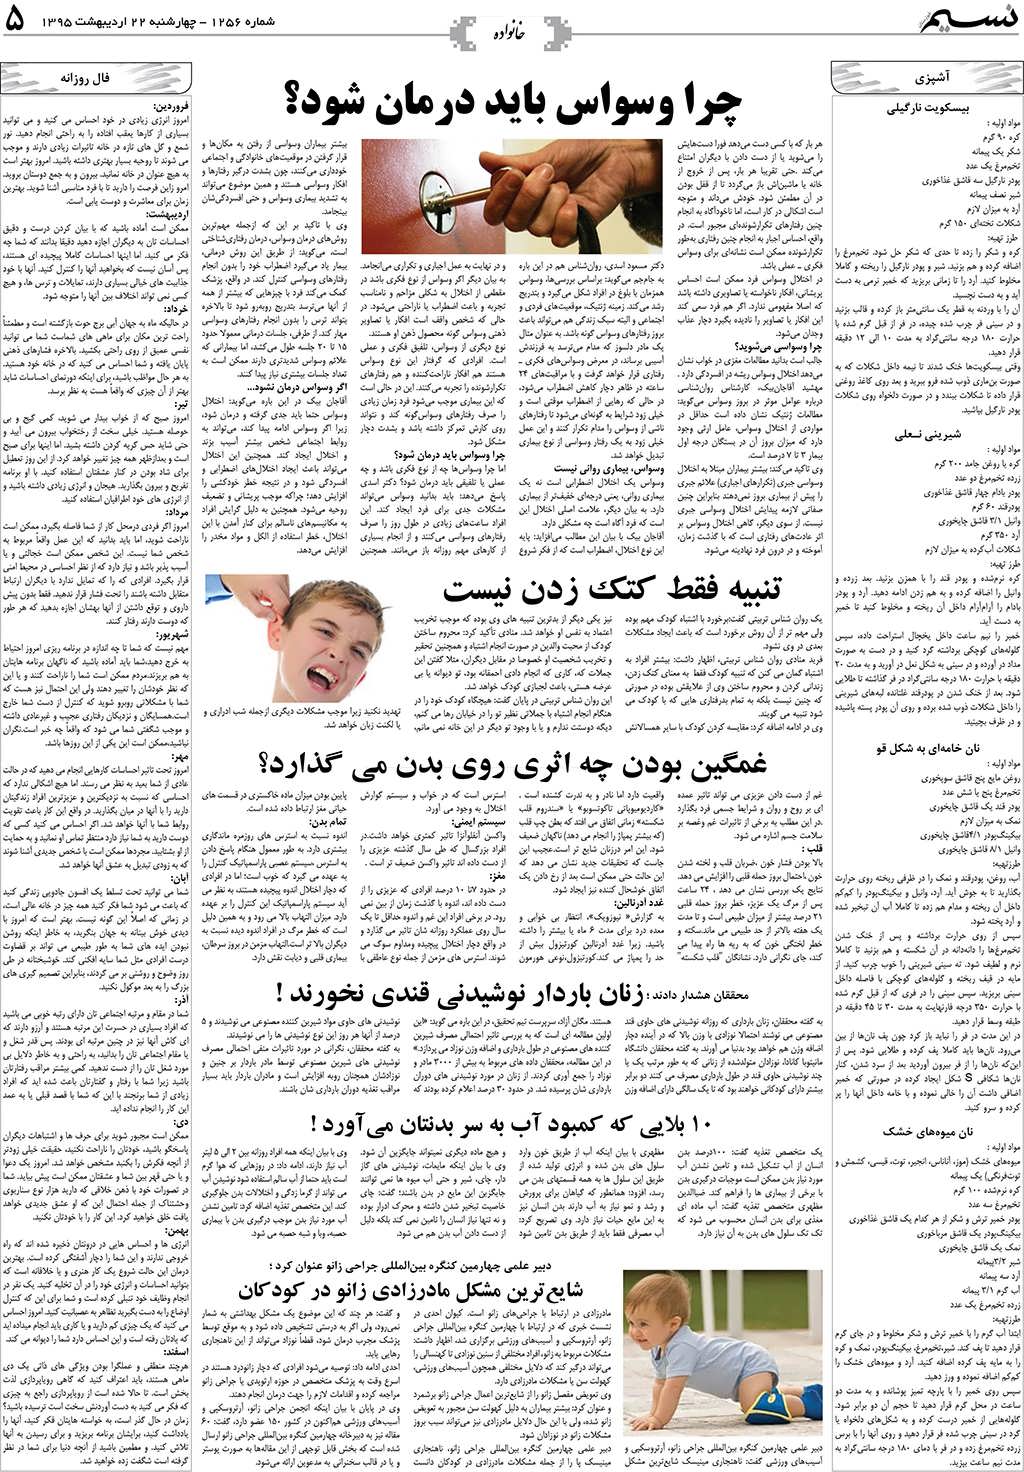 صفحه خانواده روزنامه نسیم شماره 1256